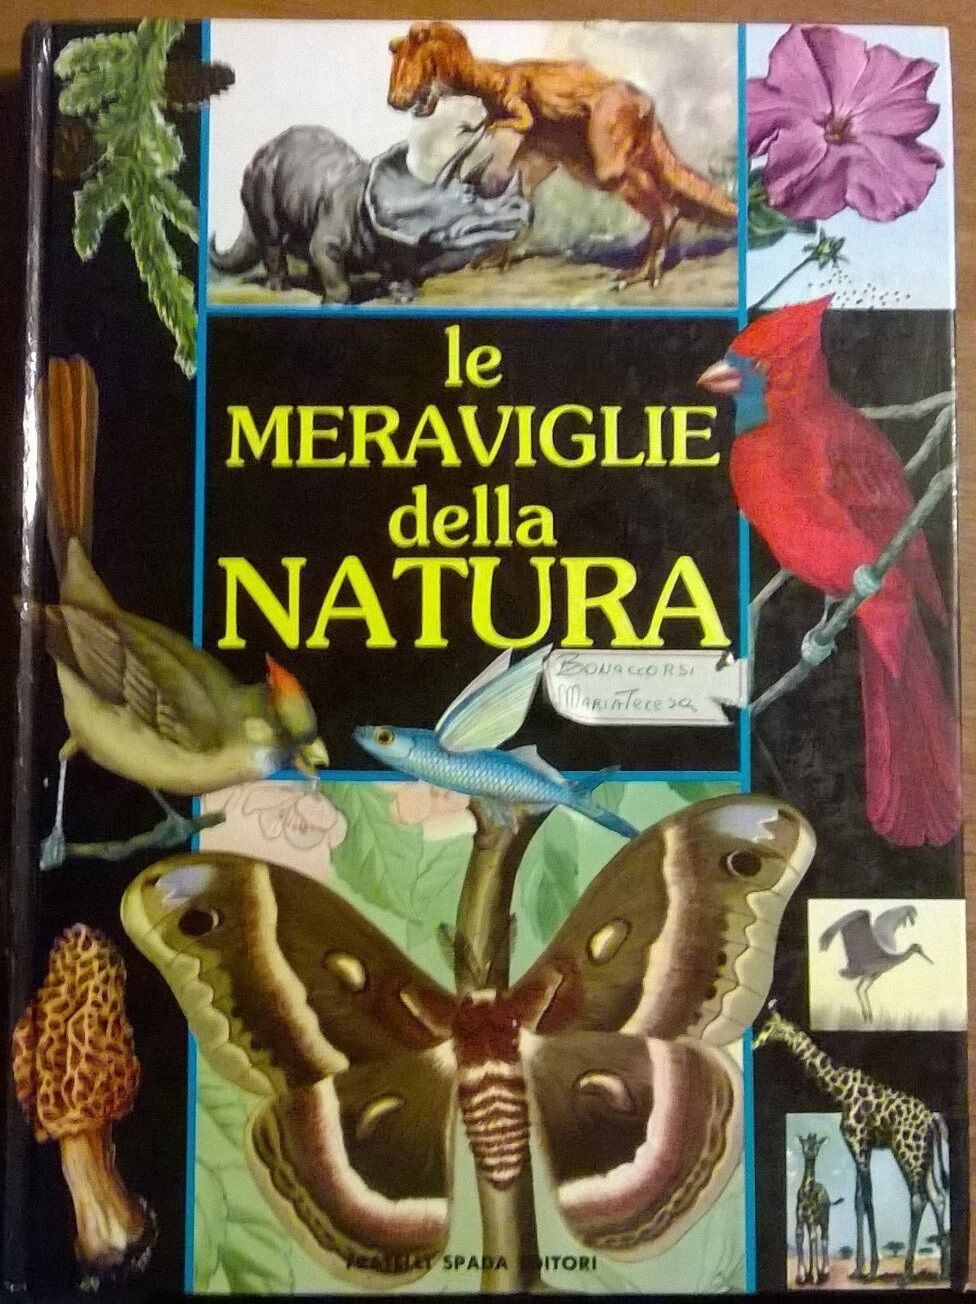 Le meraviglie della natura - B. M. Parker - Fratelli Spada Editore, 1987- L